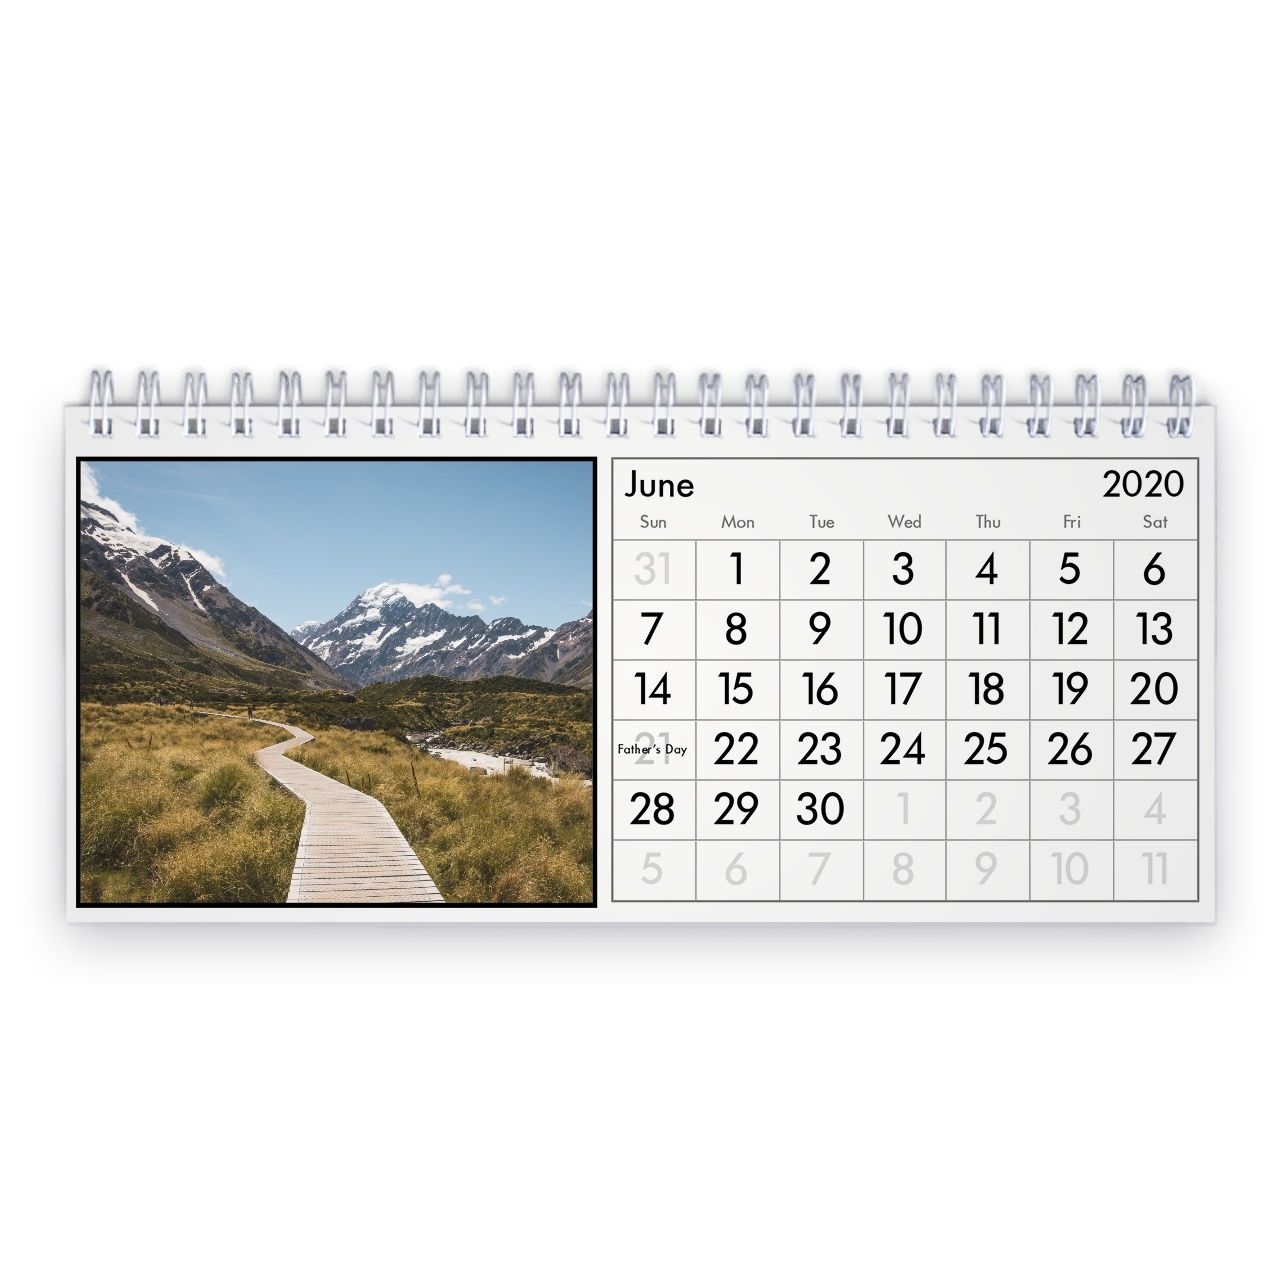 New Zealand 2021 Desk Calendar